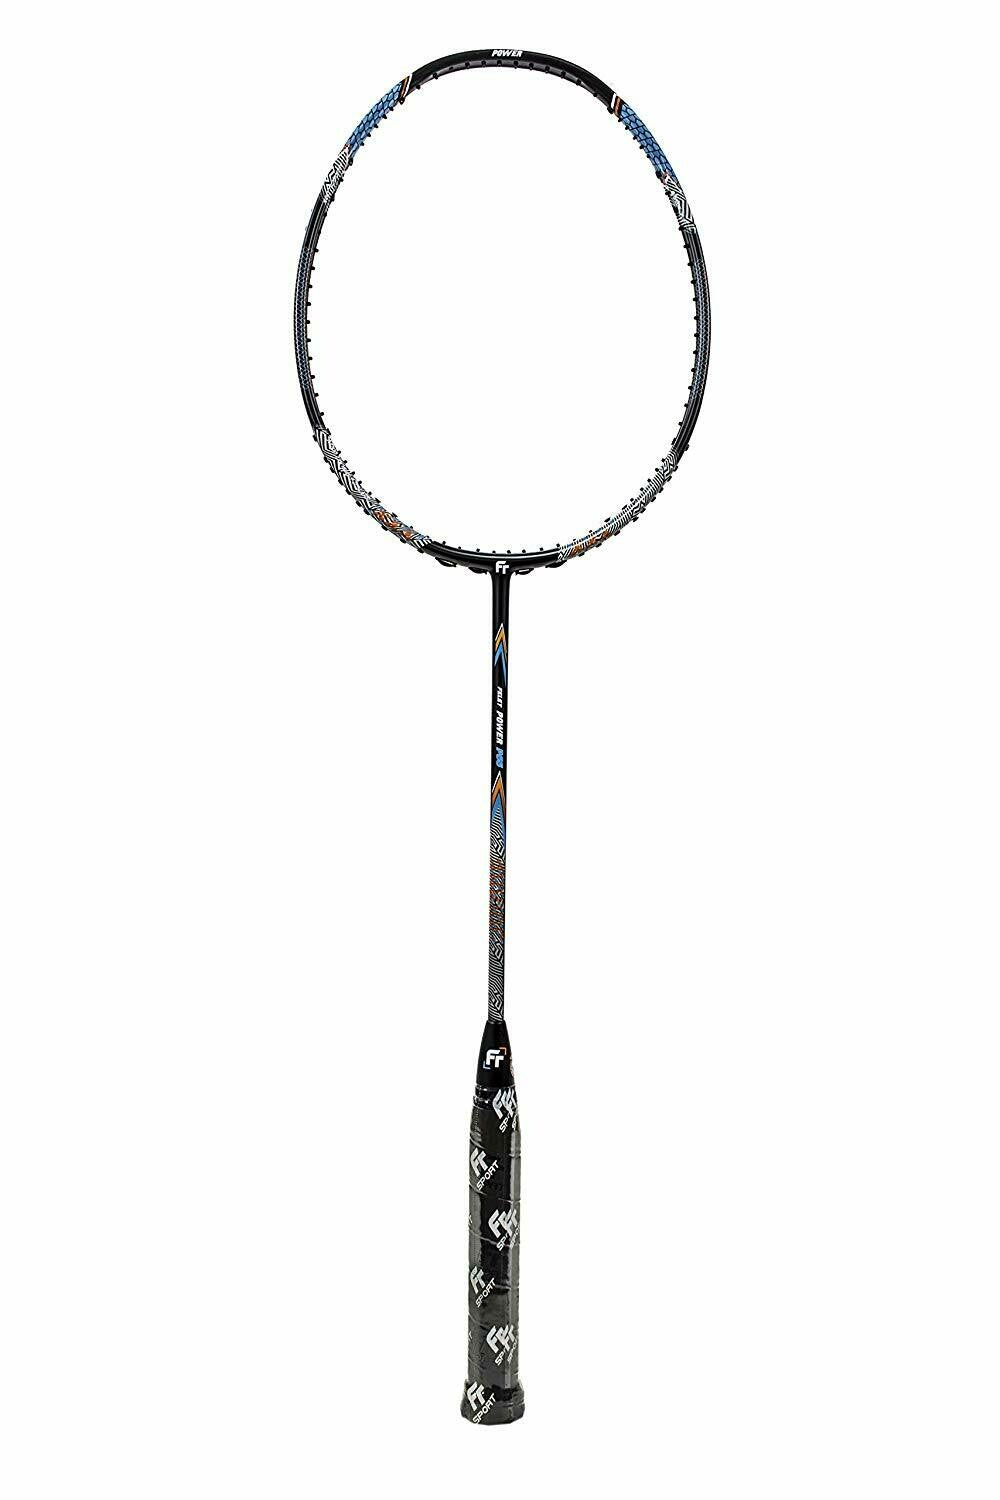 Fleet Felet Power P66 Badminton Racket